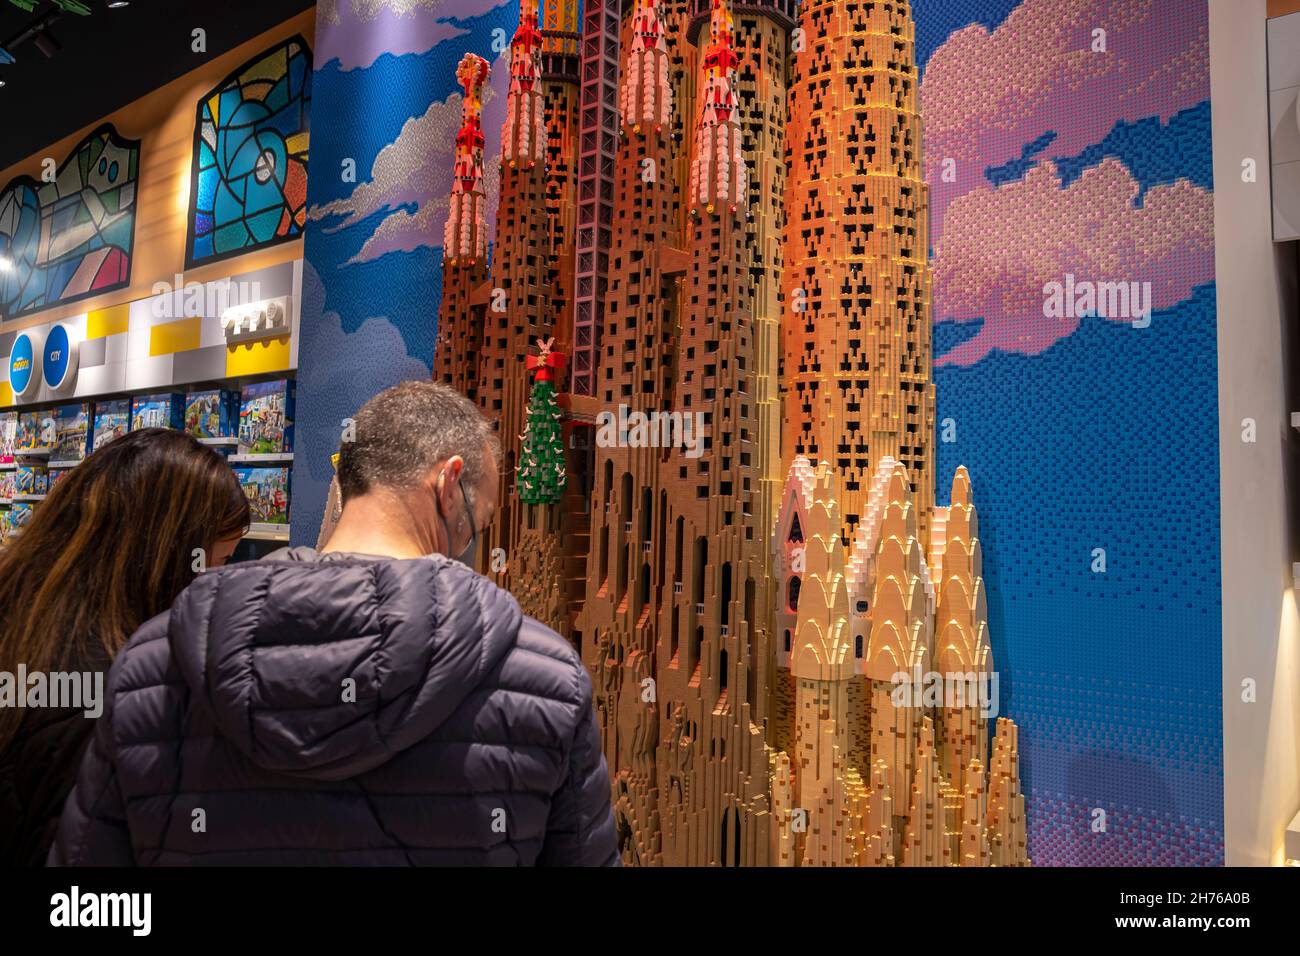 Barcelone, Espagne.20 novembre 2021.Une reproduction du temple de la Sagrada Família par Antoni Gaudí est vue à l'intérieur du nouveau magasin.la société danoise de jouets de construction LEGO a ouvert un nouveau magasin sur le Passeig de Gràcia à Barcelone, inspiré par le travail de l'architecte moderniste Antoni Gaudi.La surface de 800 m2 en fait le troisième plus grand magasin de la marque après New York et la Chine.Crédit : SOPA Images Limited/Alamy Live News Banque D'Images